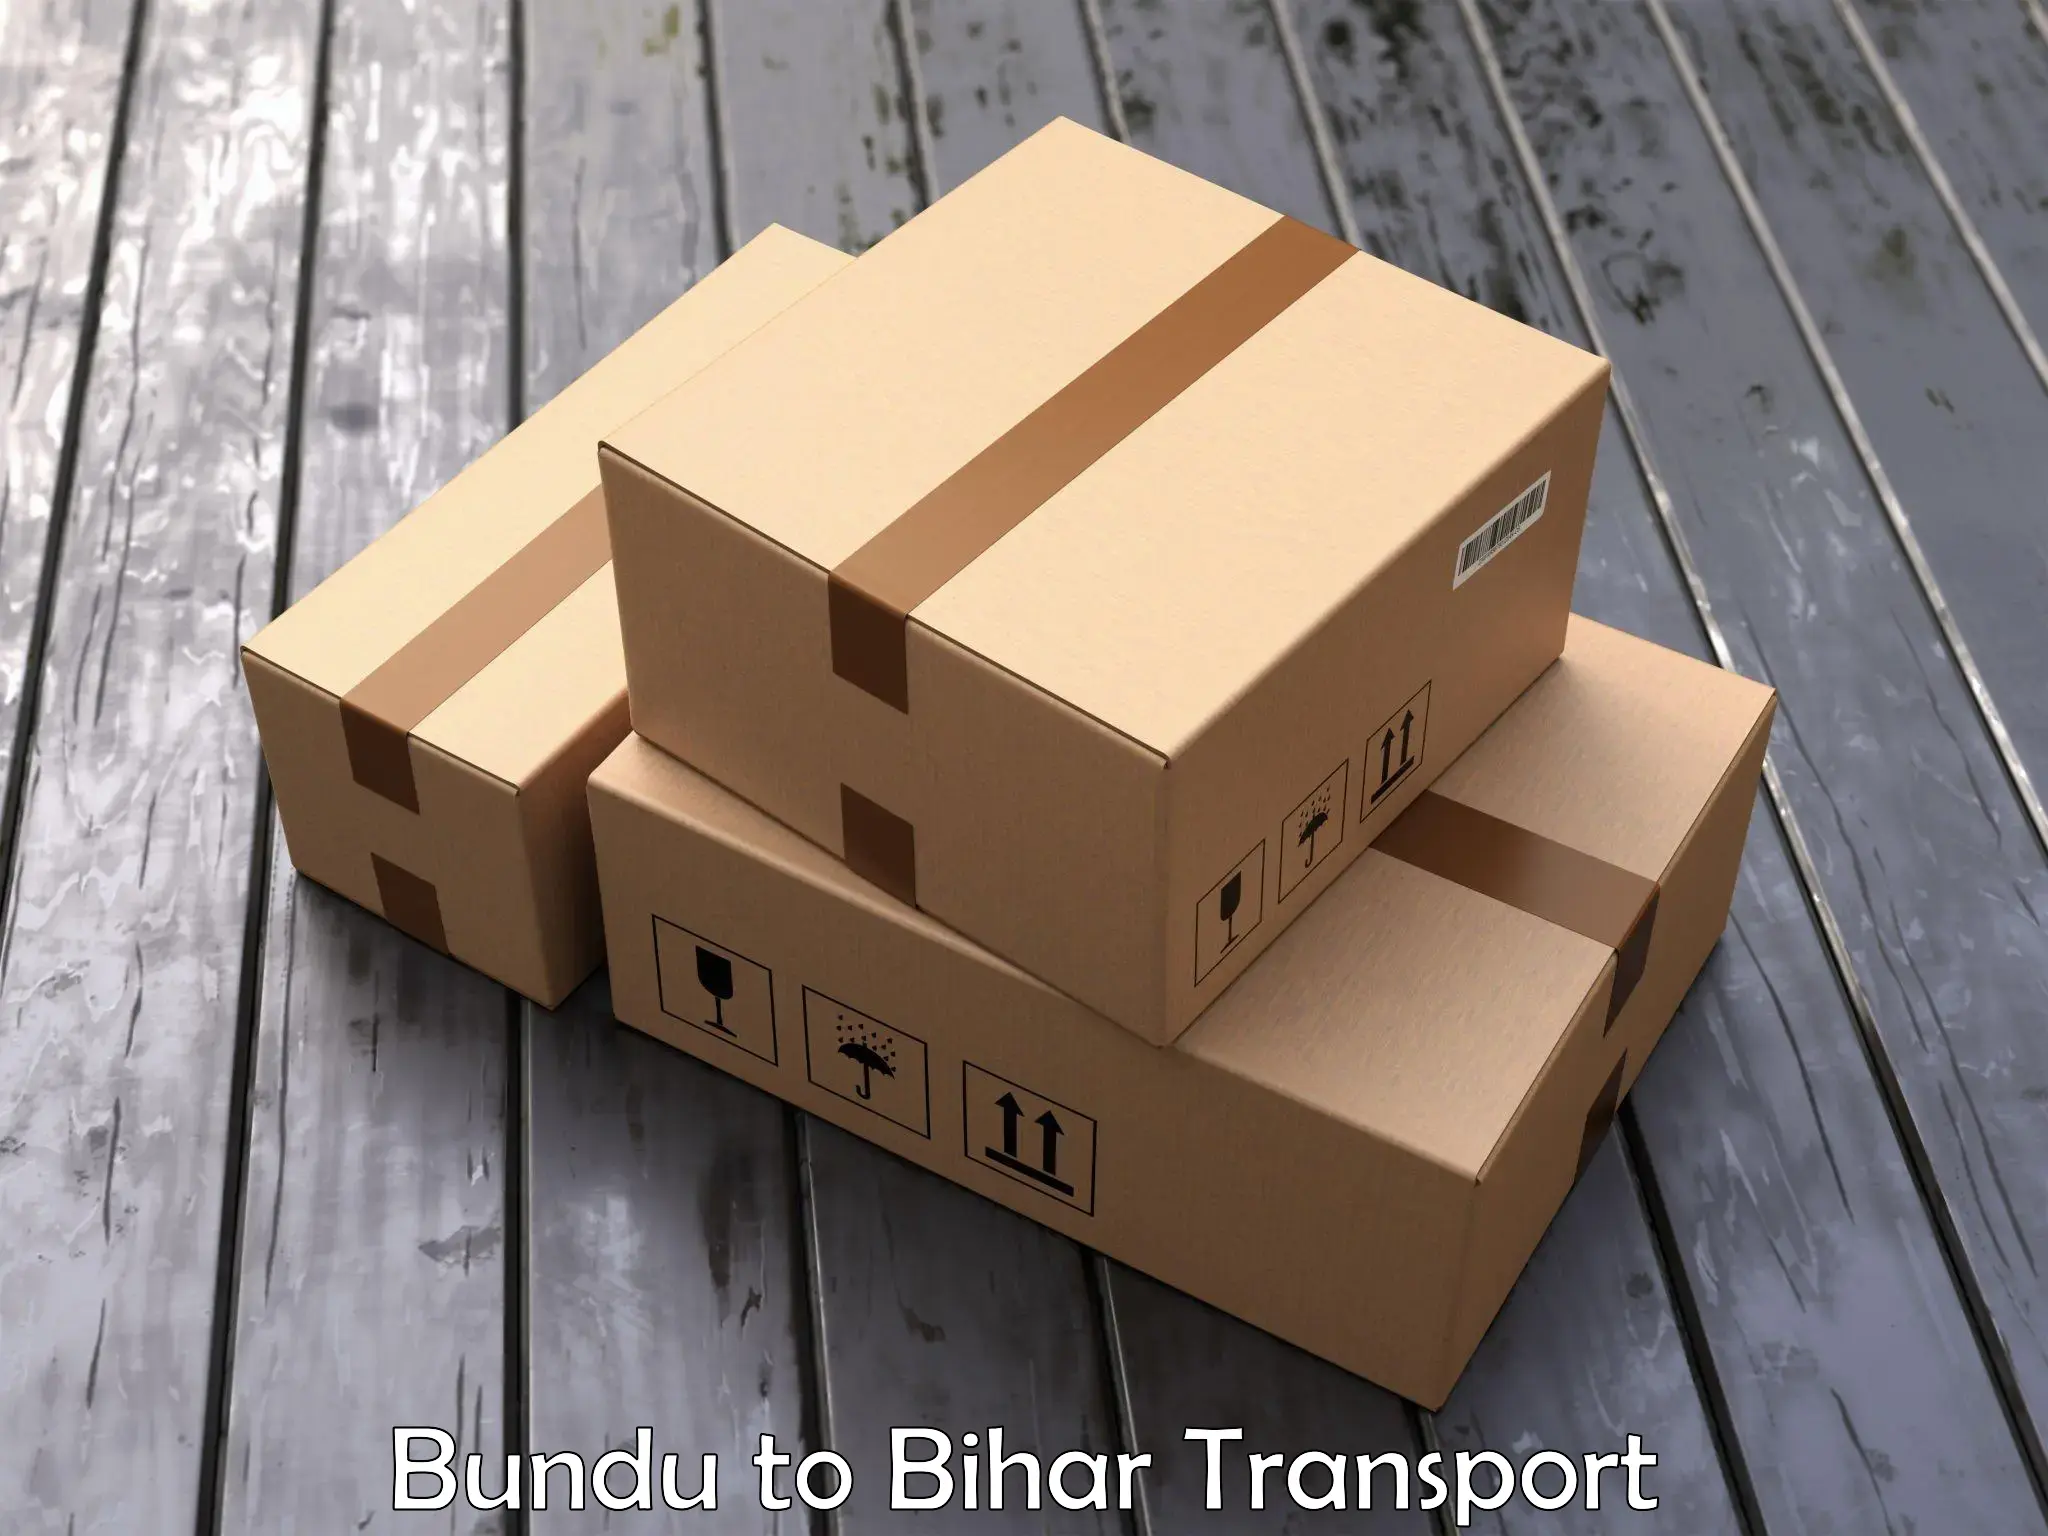 Furniture transport service Bundu to Phulparas